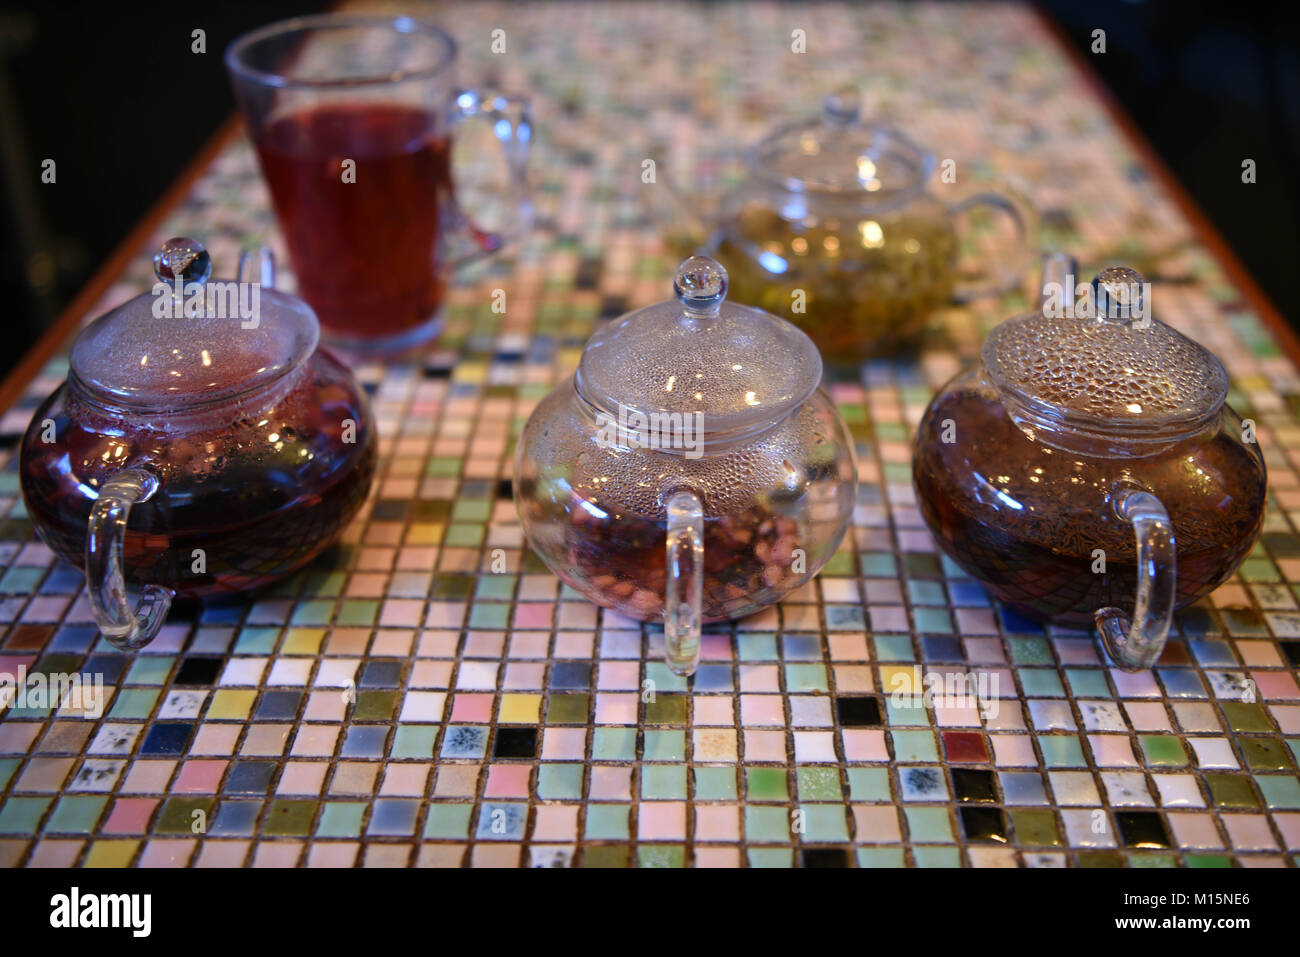 Bunte Bild mit Glas Teekanne mit heißem Obst Tee Getränken gefüllt auf einem Mosaik quadratischen Muster Tischplatte mit einem Gegossenen fertig zu haben. Stockfoto